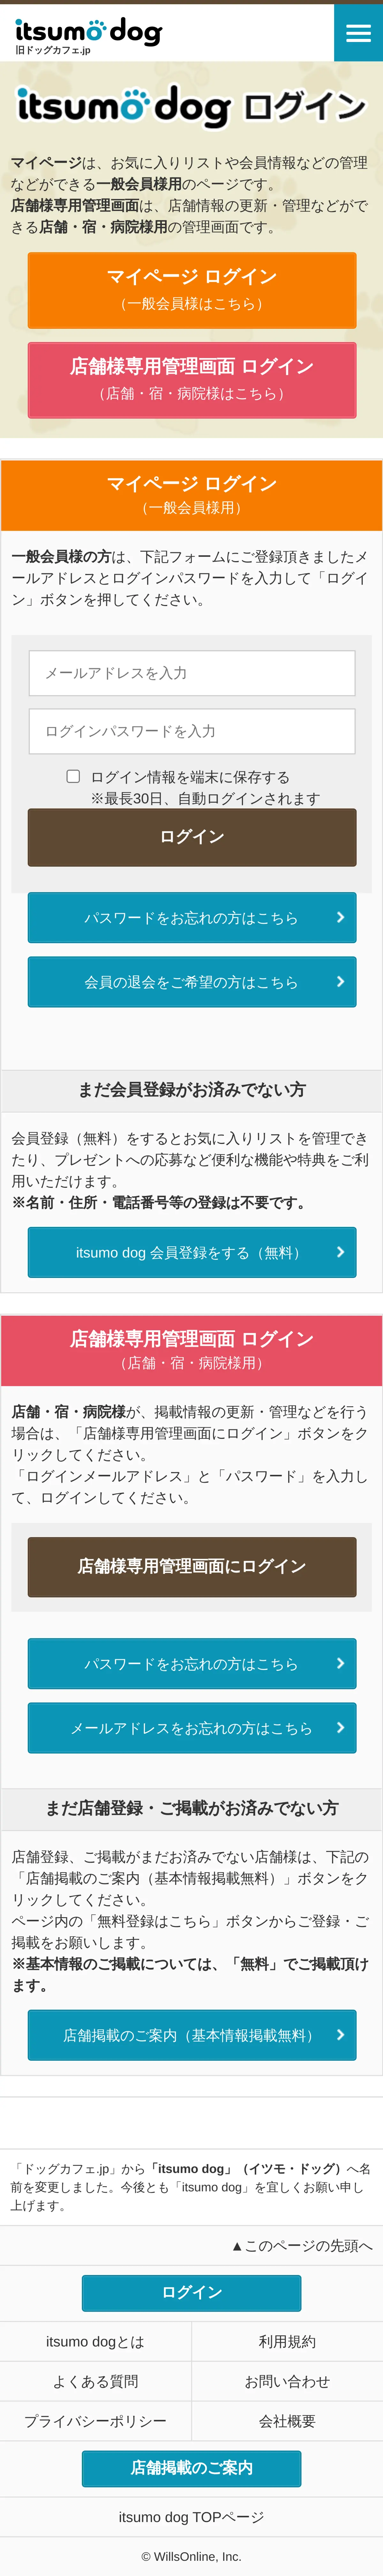 キャプチャ画面 会社名:ウィルズオンライン株式会社プロジェクト名:itsumo dog 画面名:ログイン デバイス名:SPカテゴリ:動物・ペットタグ:ログイン,SP